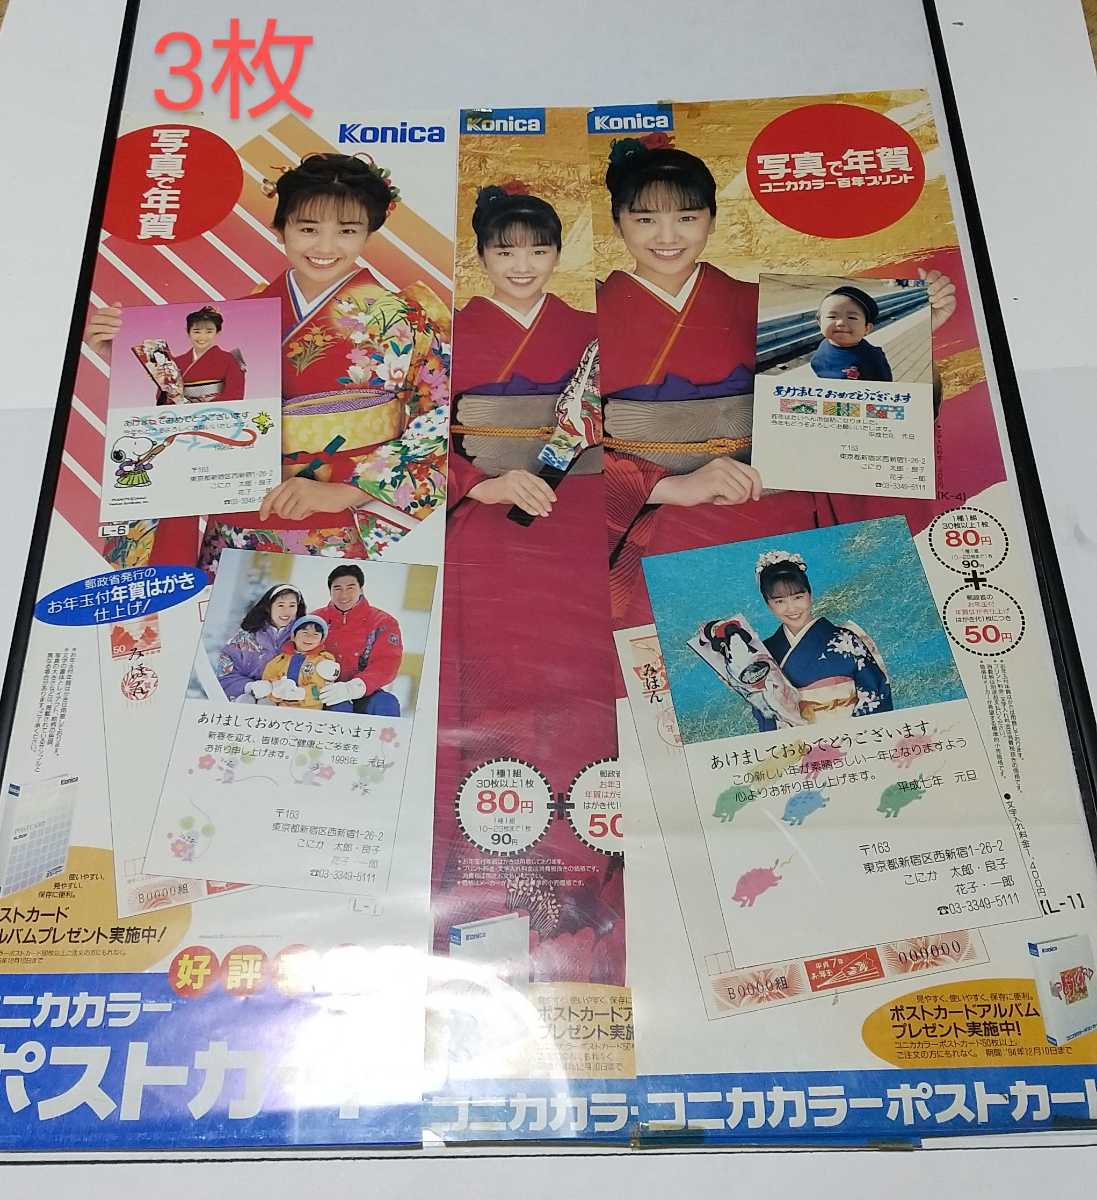 니시다 히카루 / 코니카 연하 사진 포함 코니카 컬러 엽서 판촉 미니 포스터 전 7 종 세트 비매품, 에게, 니시다 히카루, 다른 사람